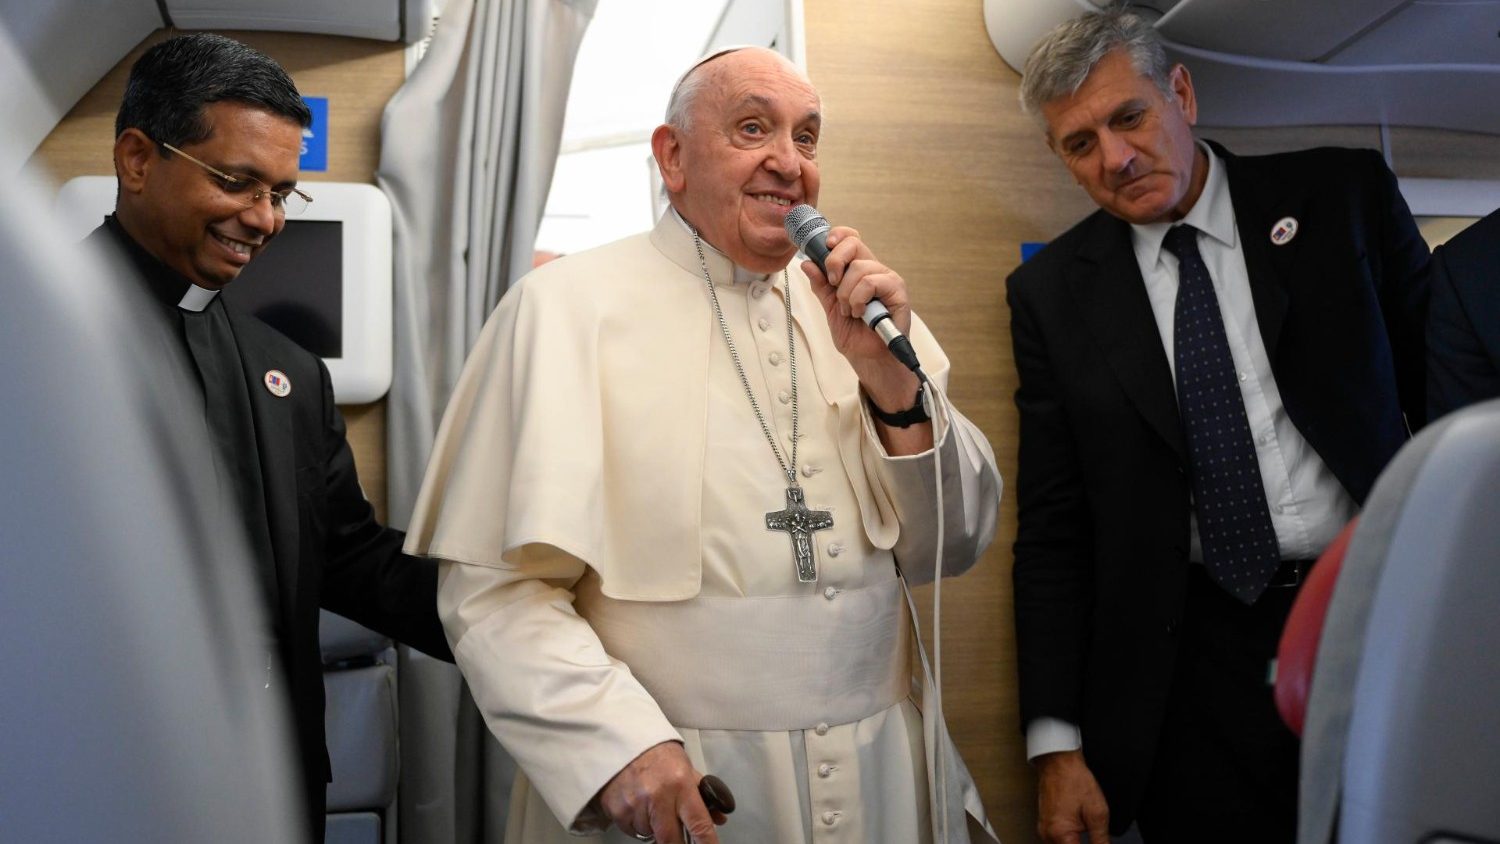 Папа ответил на вопрос о «великой России»